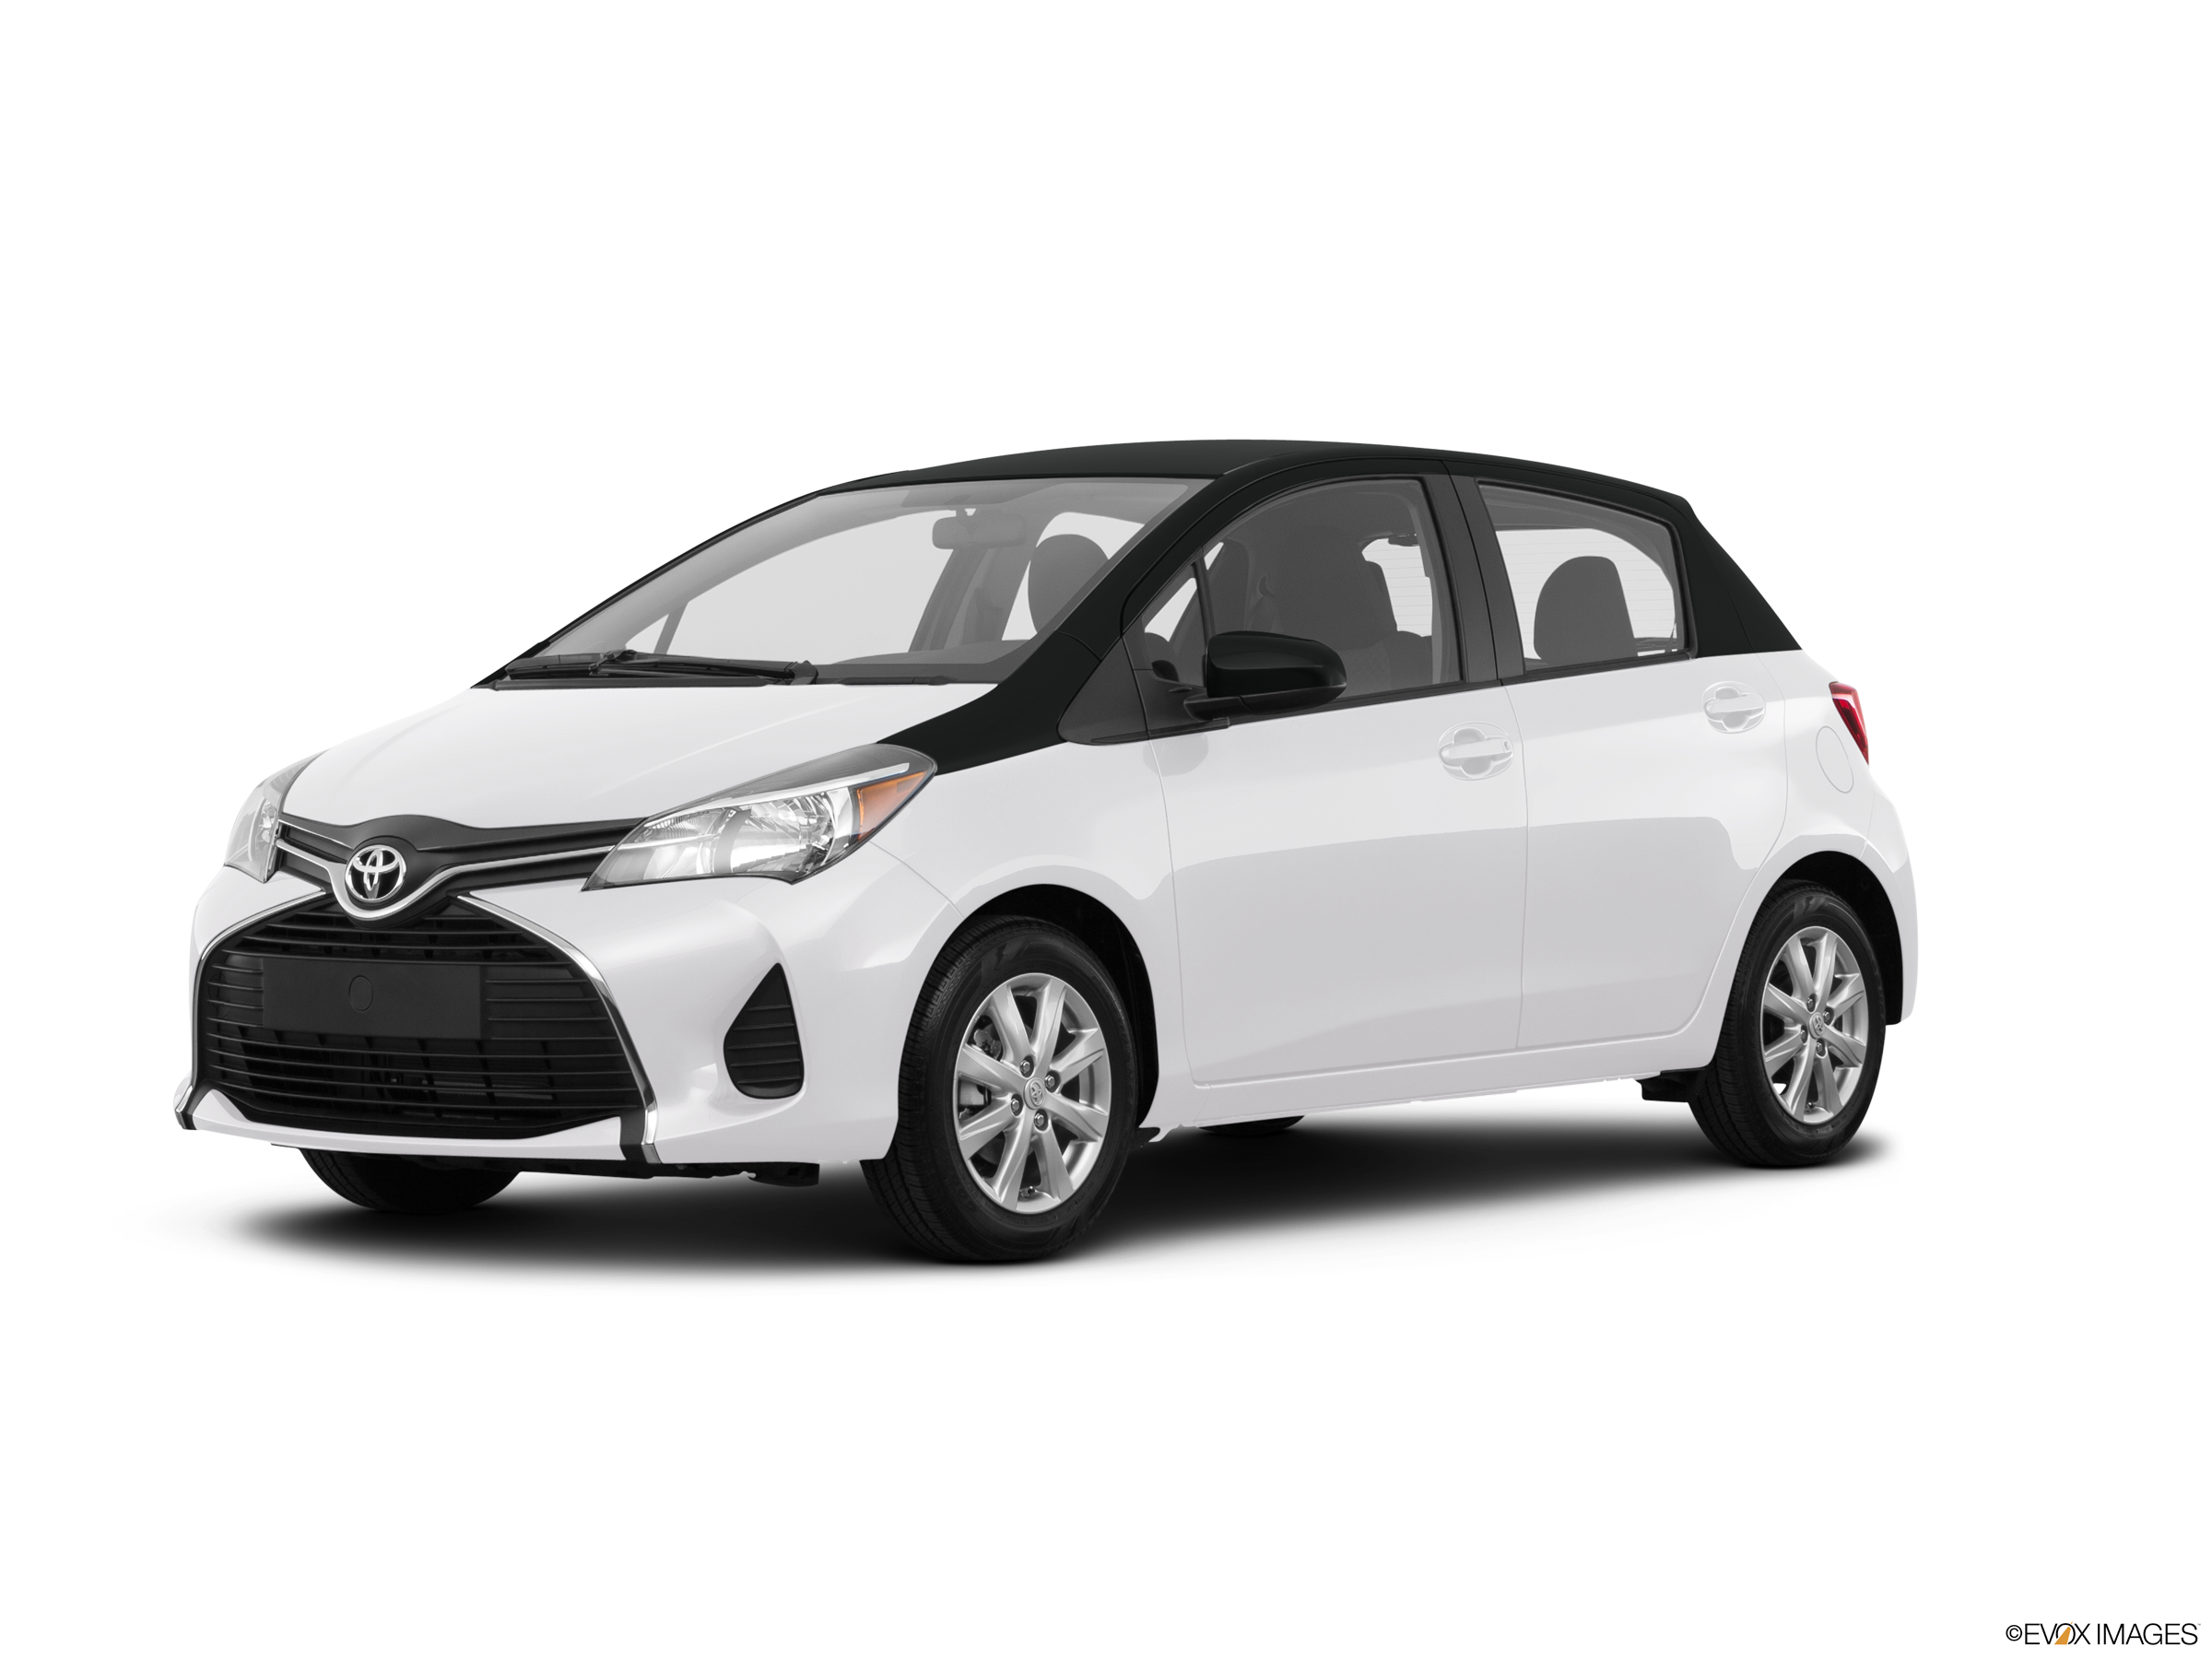 Toyota Yaris 2016 nhập Thái ra mắt giá từ 636 triệu đồng